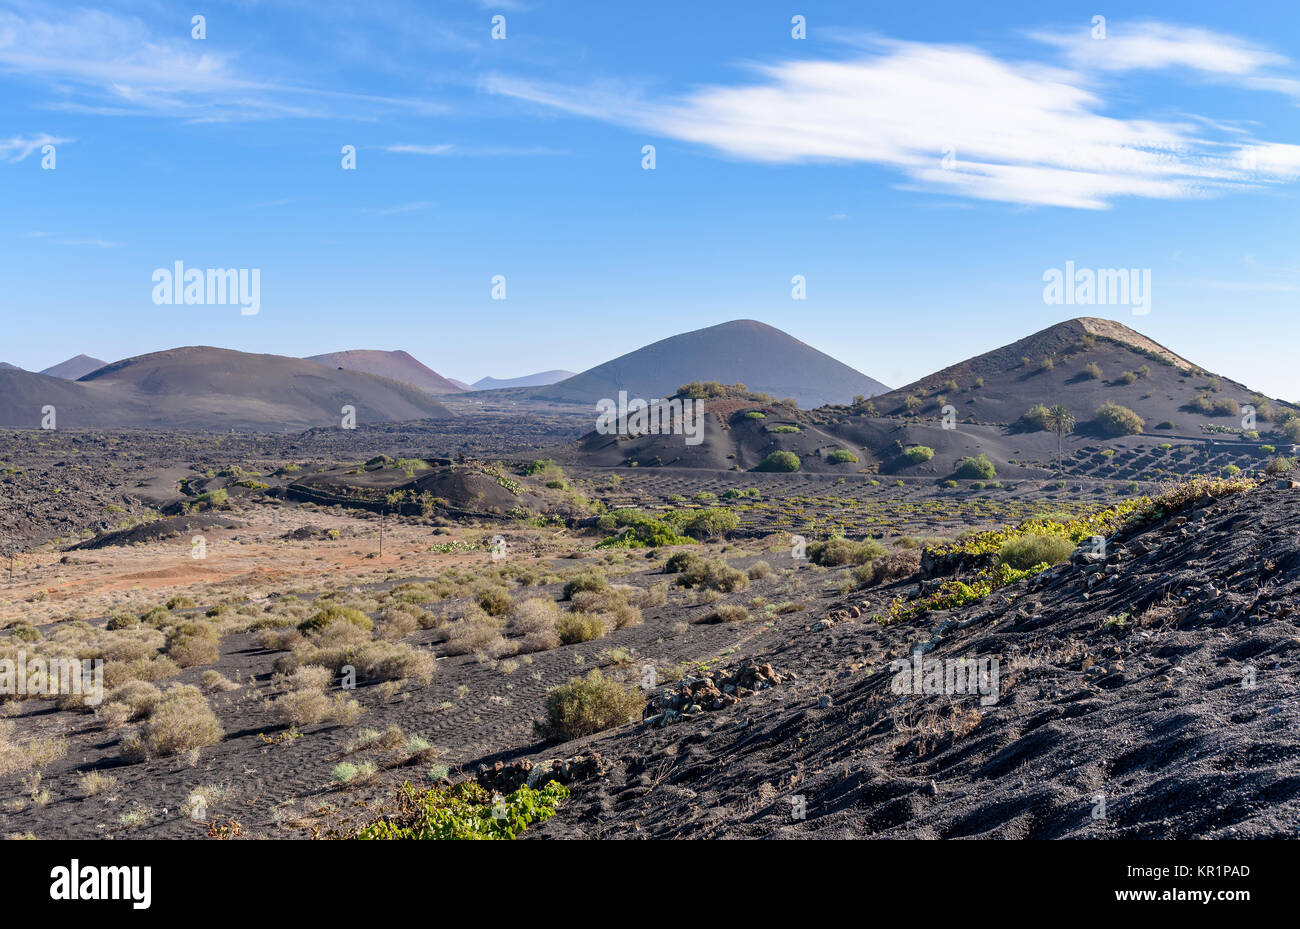 Insel Lanzarote, Kanarische Inseln, Spanien, vulkanischen Ursprungs und einem subtropischen - Wüste Klima Stockfoto